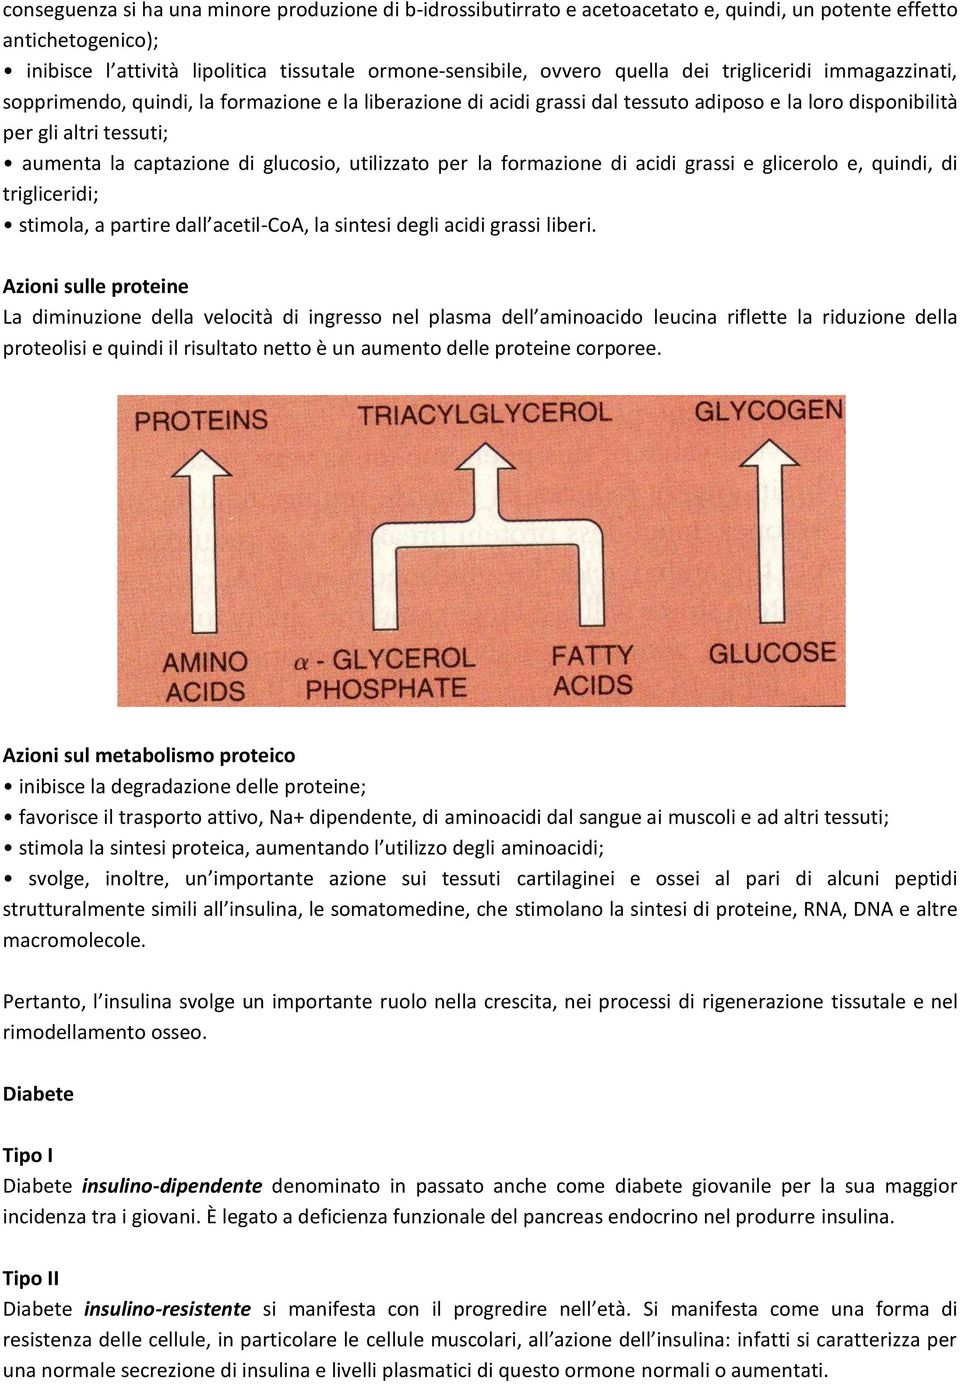 glucosio, utilizzato per la formazione di acidi grassi e glicerolo e, quindi, di trigliceridi; stimola, a partire dall acetil-coa, la sintesi degli acidi grassi liberi.